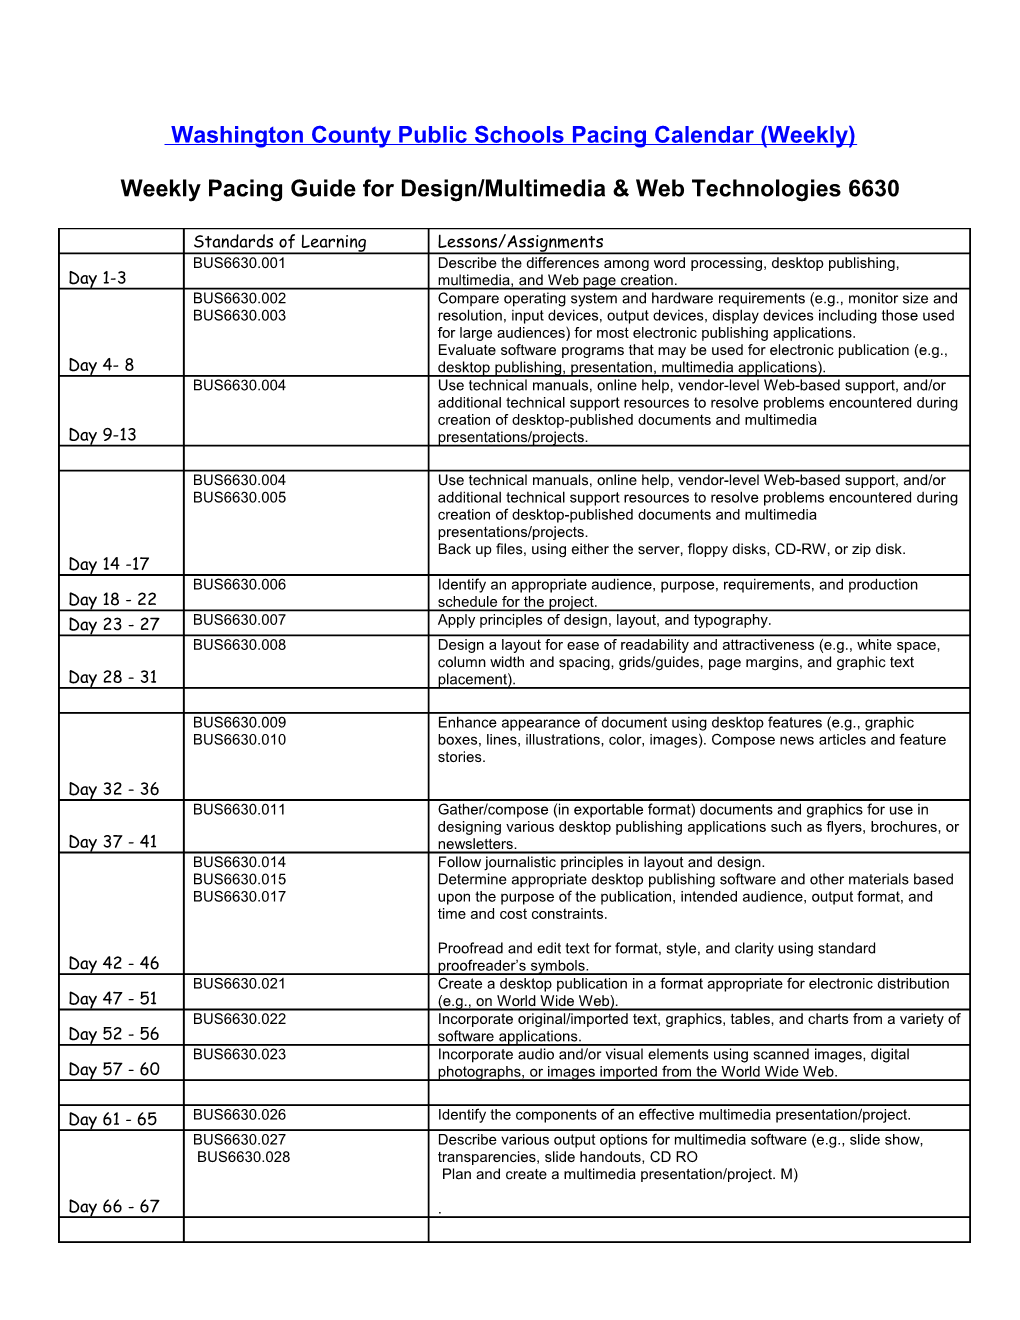 2006-2007 Washington County Public Schools Pacing Calendar (Weekly)